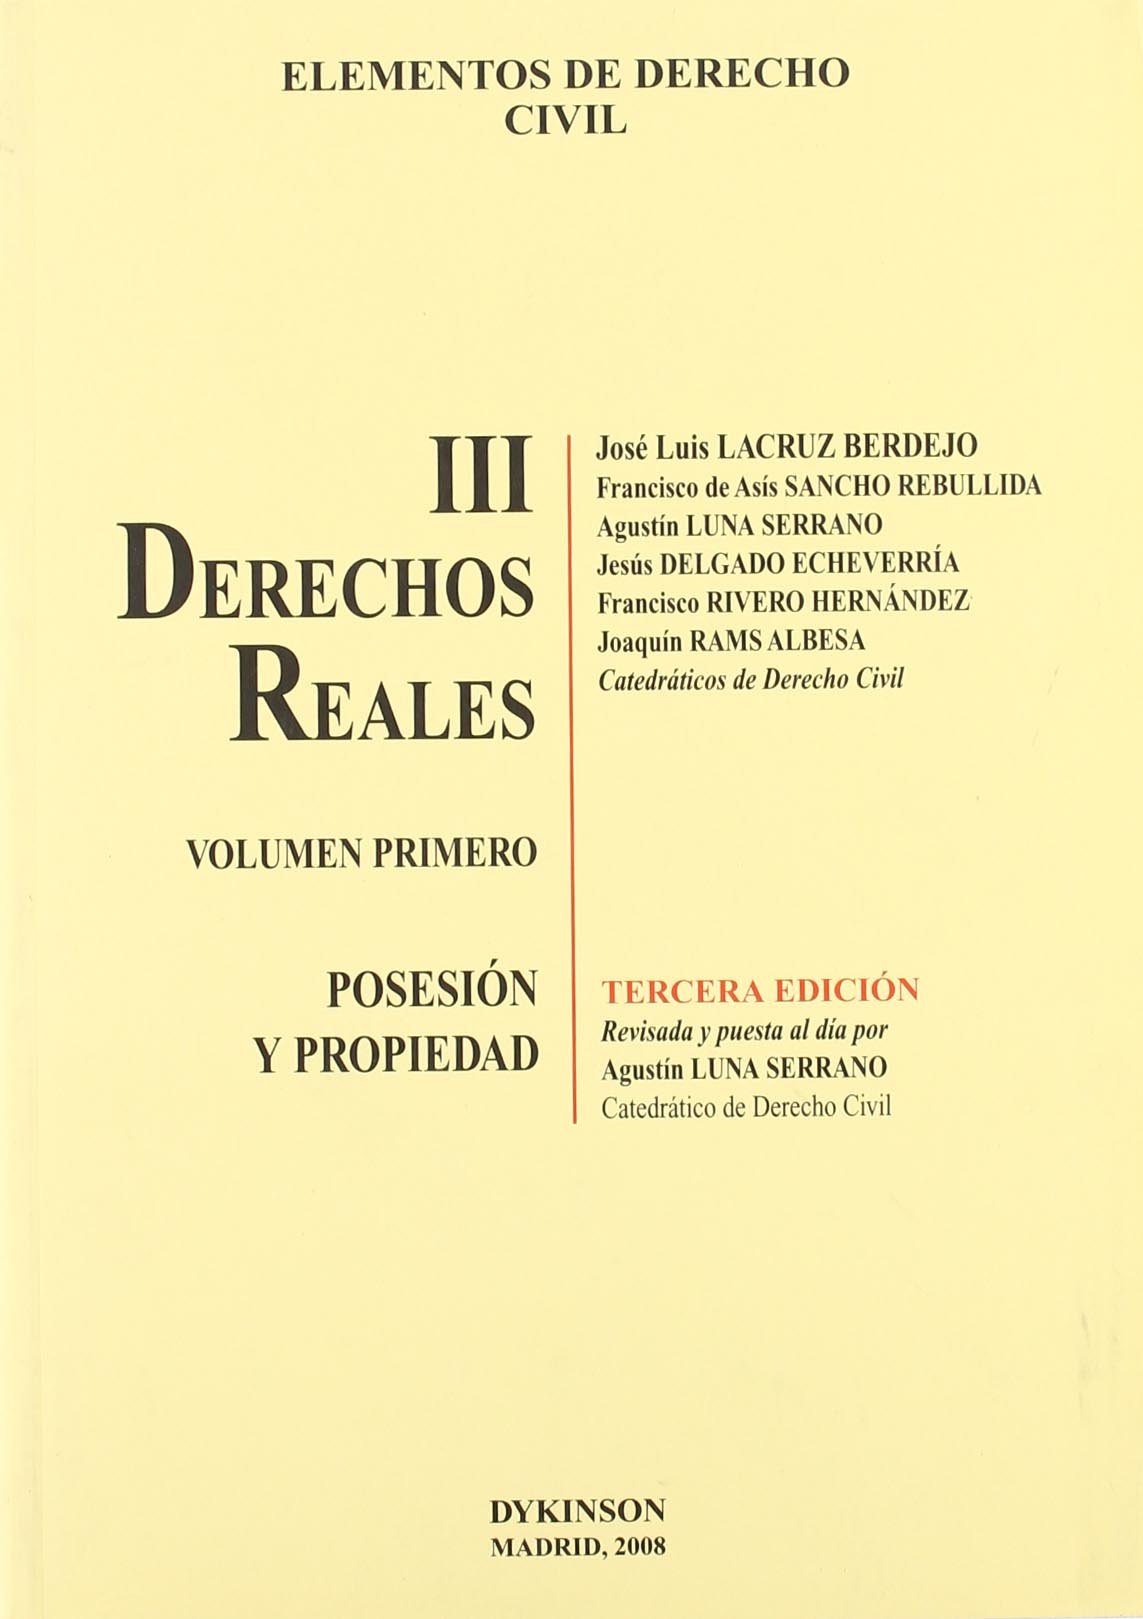 Elementos de Derecho Civil, 03/01. Derechos Reales Posesión y Propiedad